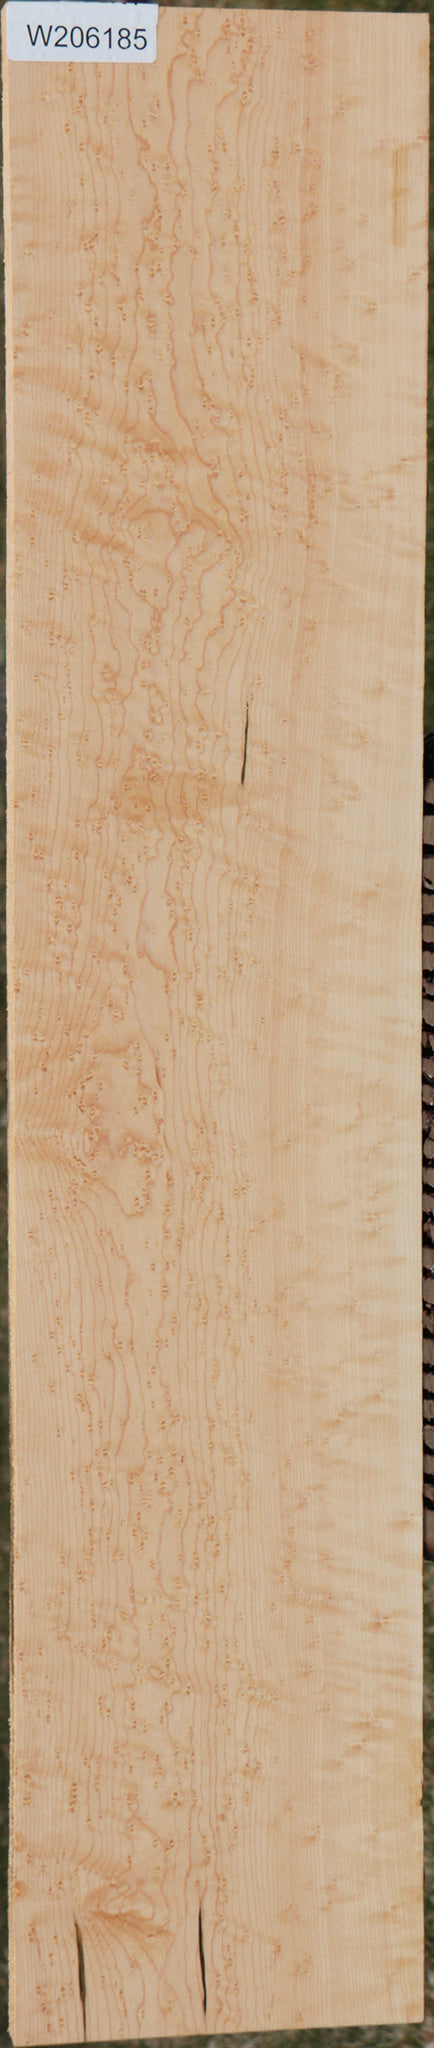 Extra Fancy Birdseye Maple Lumber